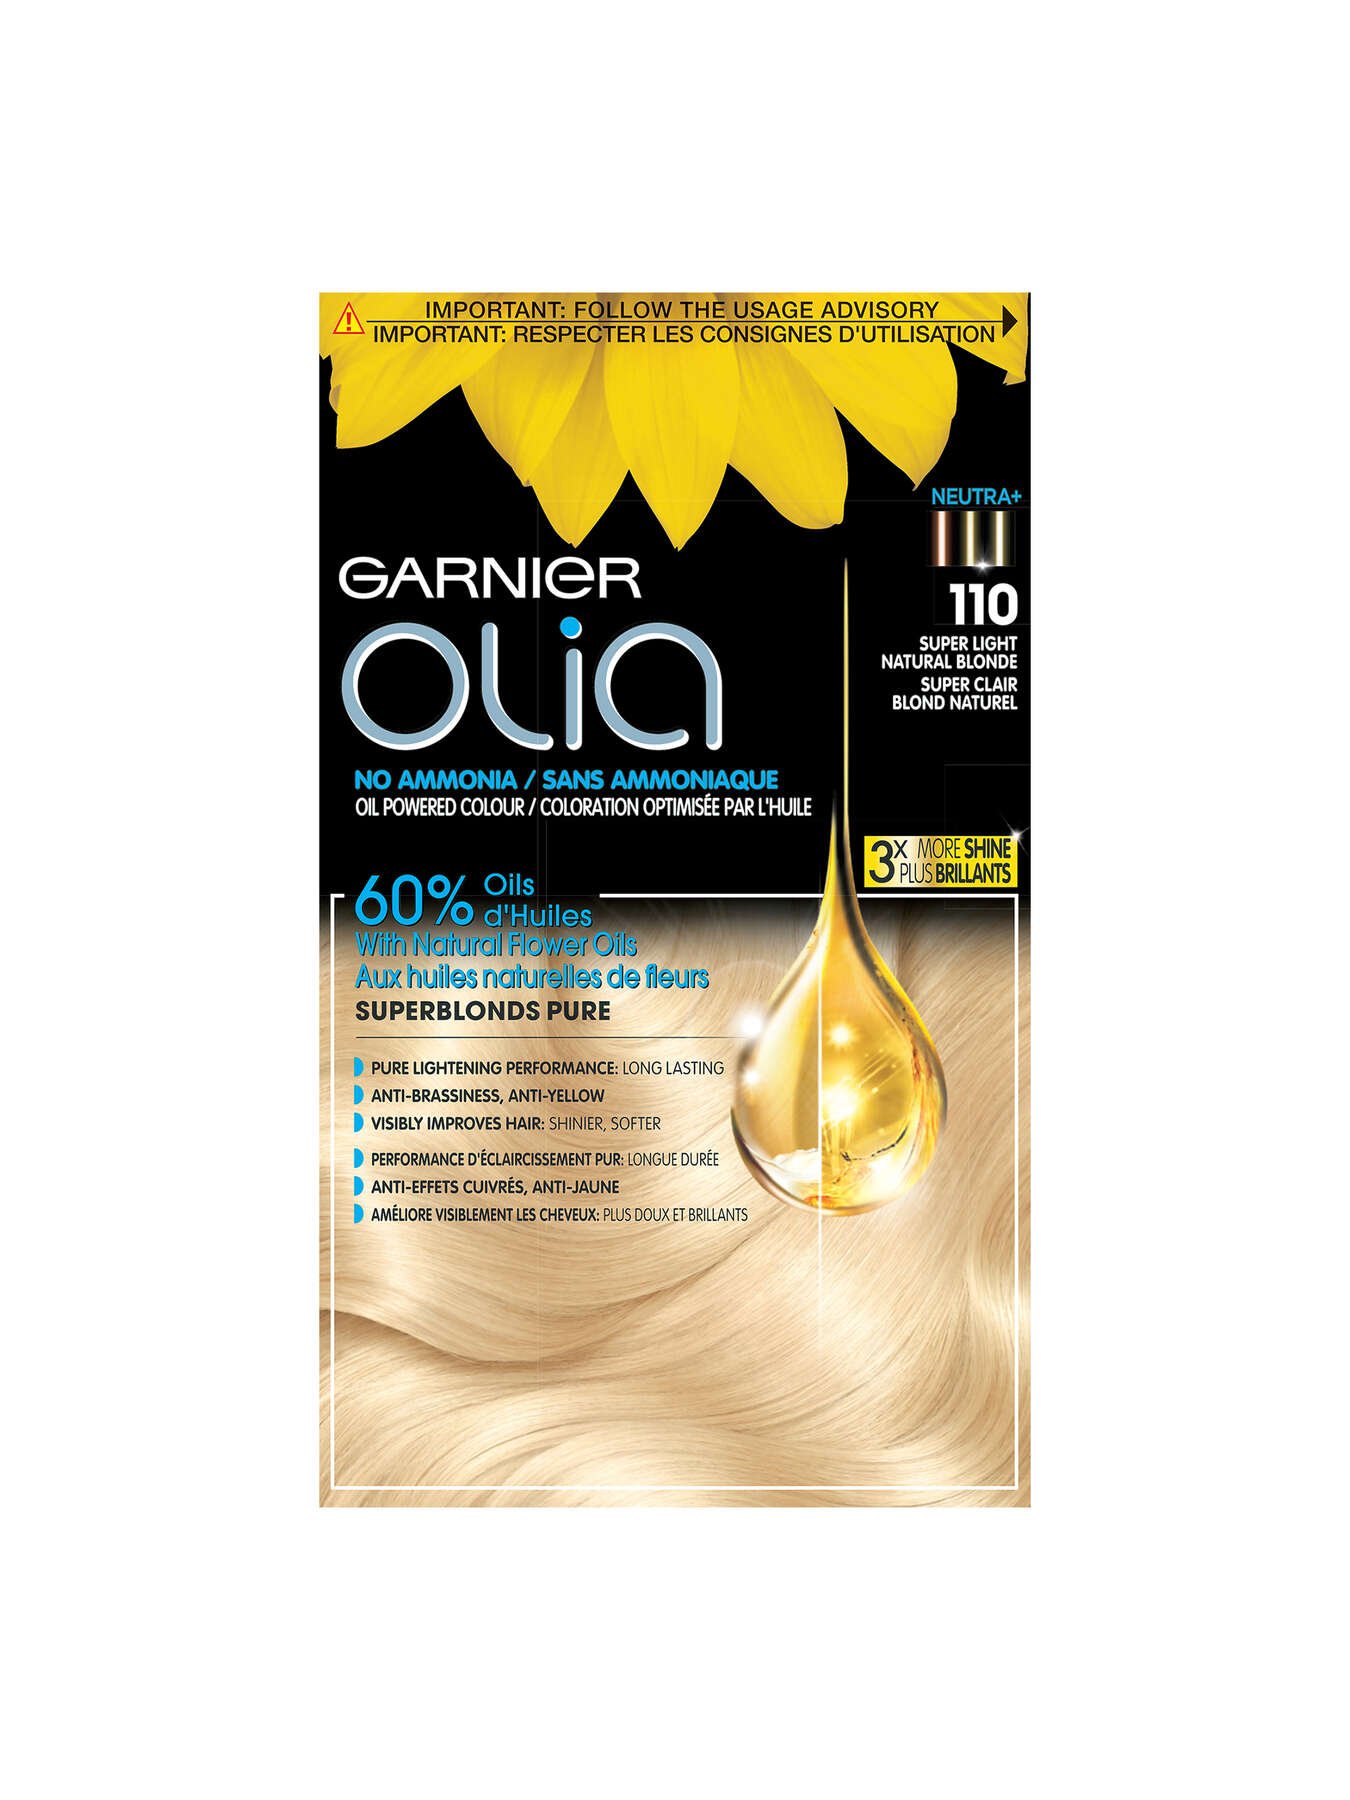 garnier hair dye olia 110 super light natural blonde 3600541937208 t1